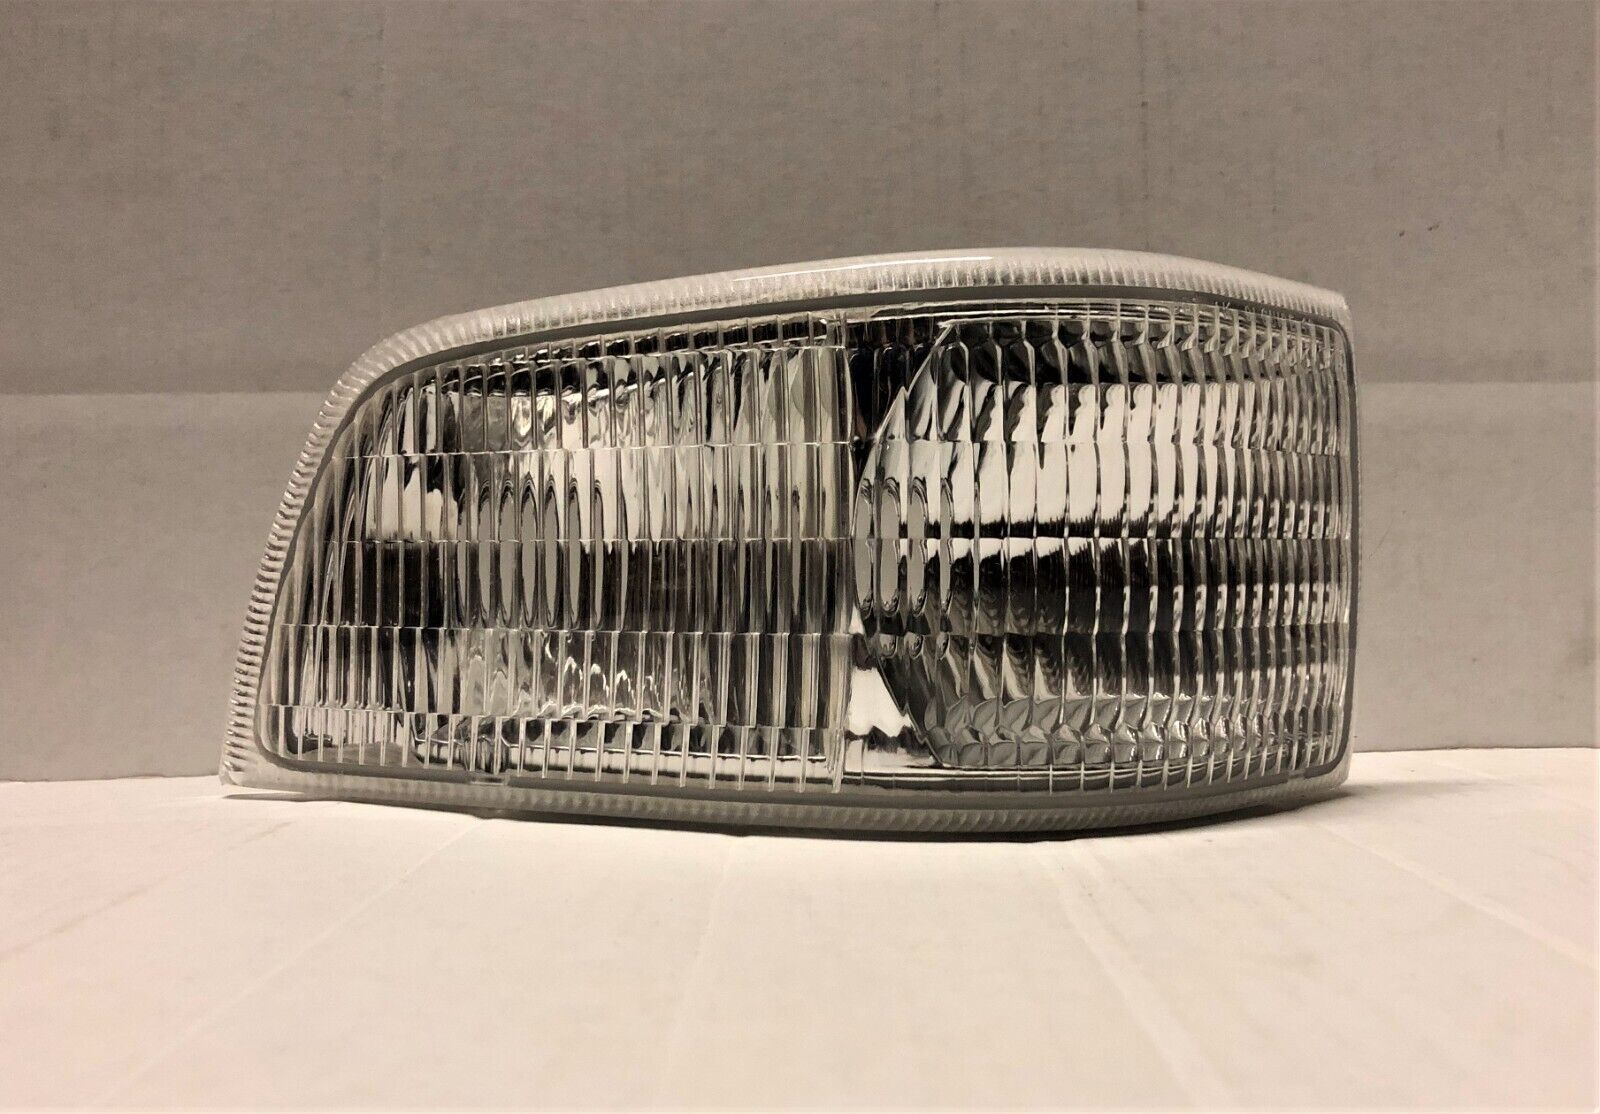 GM Corner Lamp Assembly #5975840 - Buick Roadmaster ('92-'96) - Passenger Side